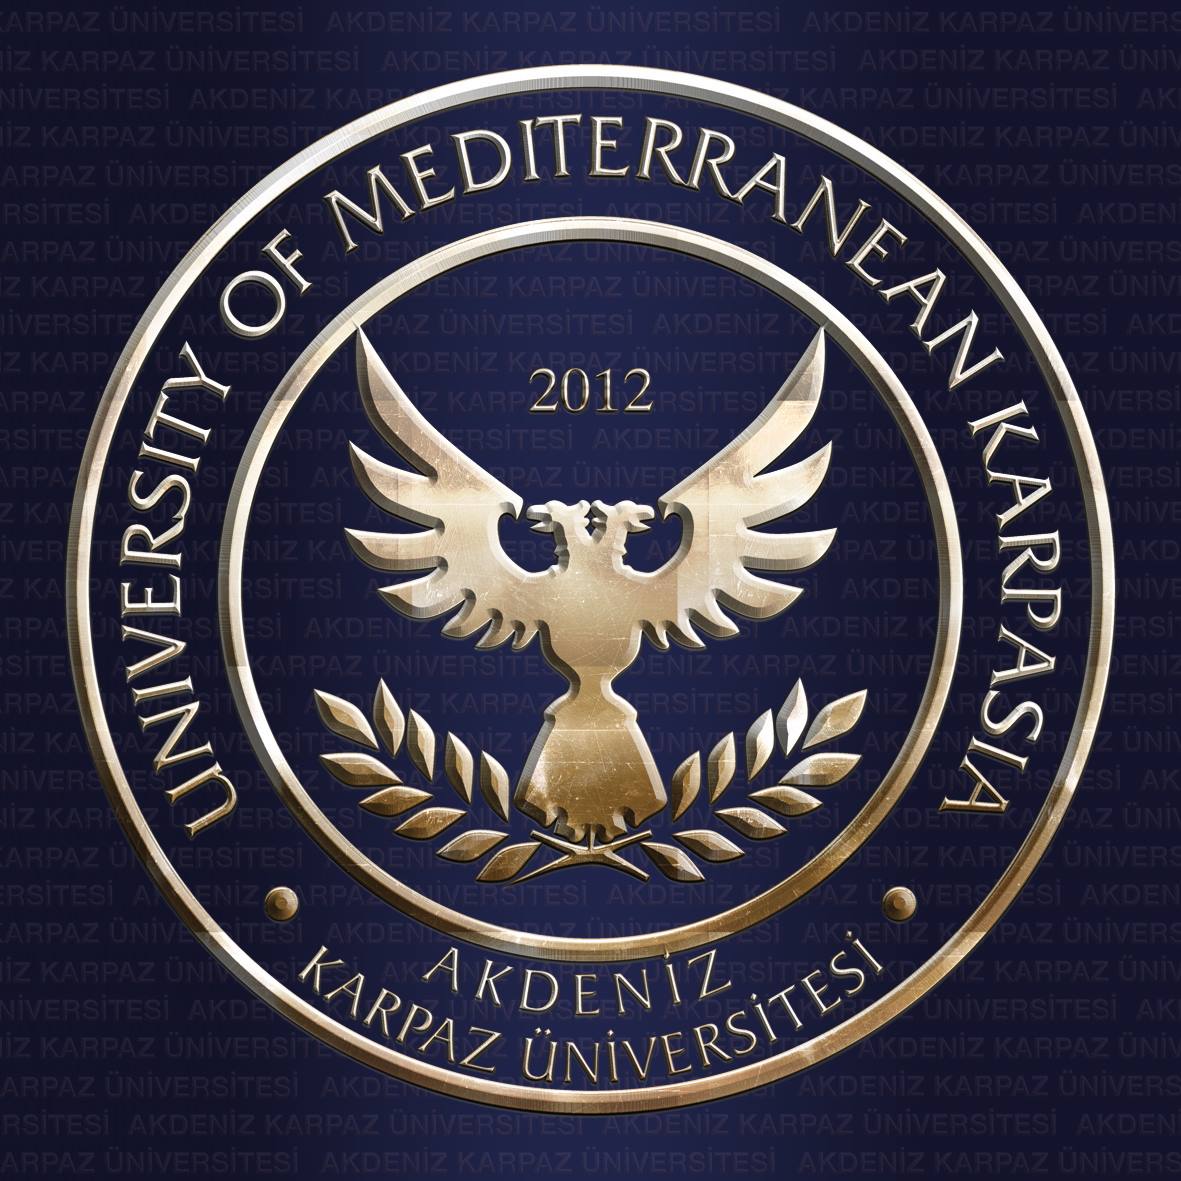 Akdeniz Karpaz Üniversitesi logo